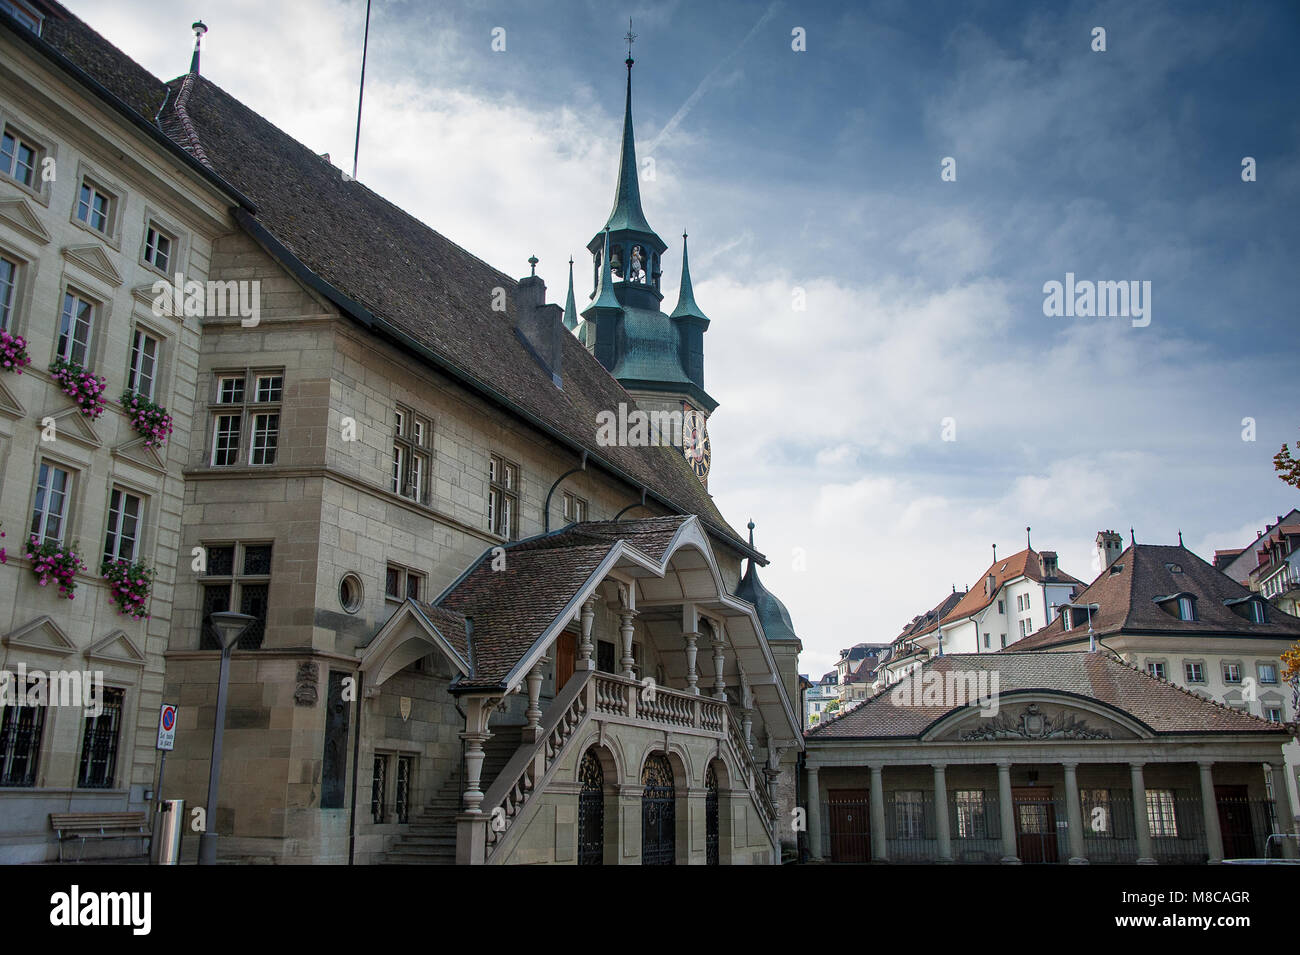 La place de l'hôtel de ville, Fribourg, Suisse : scène pittoresque de façades gothiques, et clocher de l'église Banque D'Images